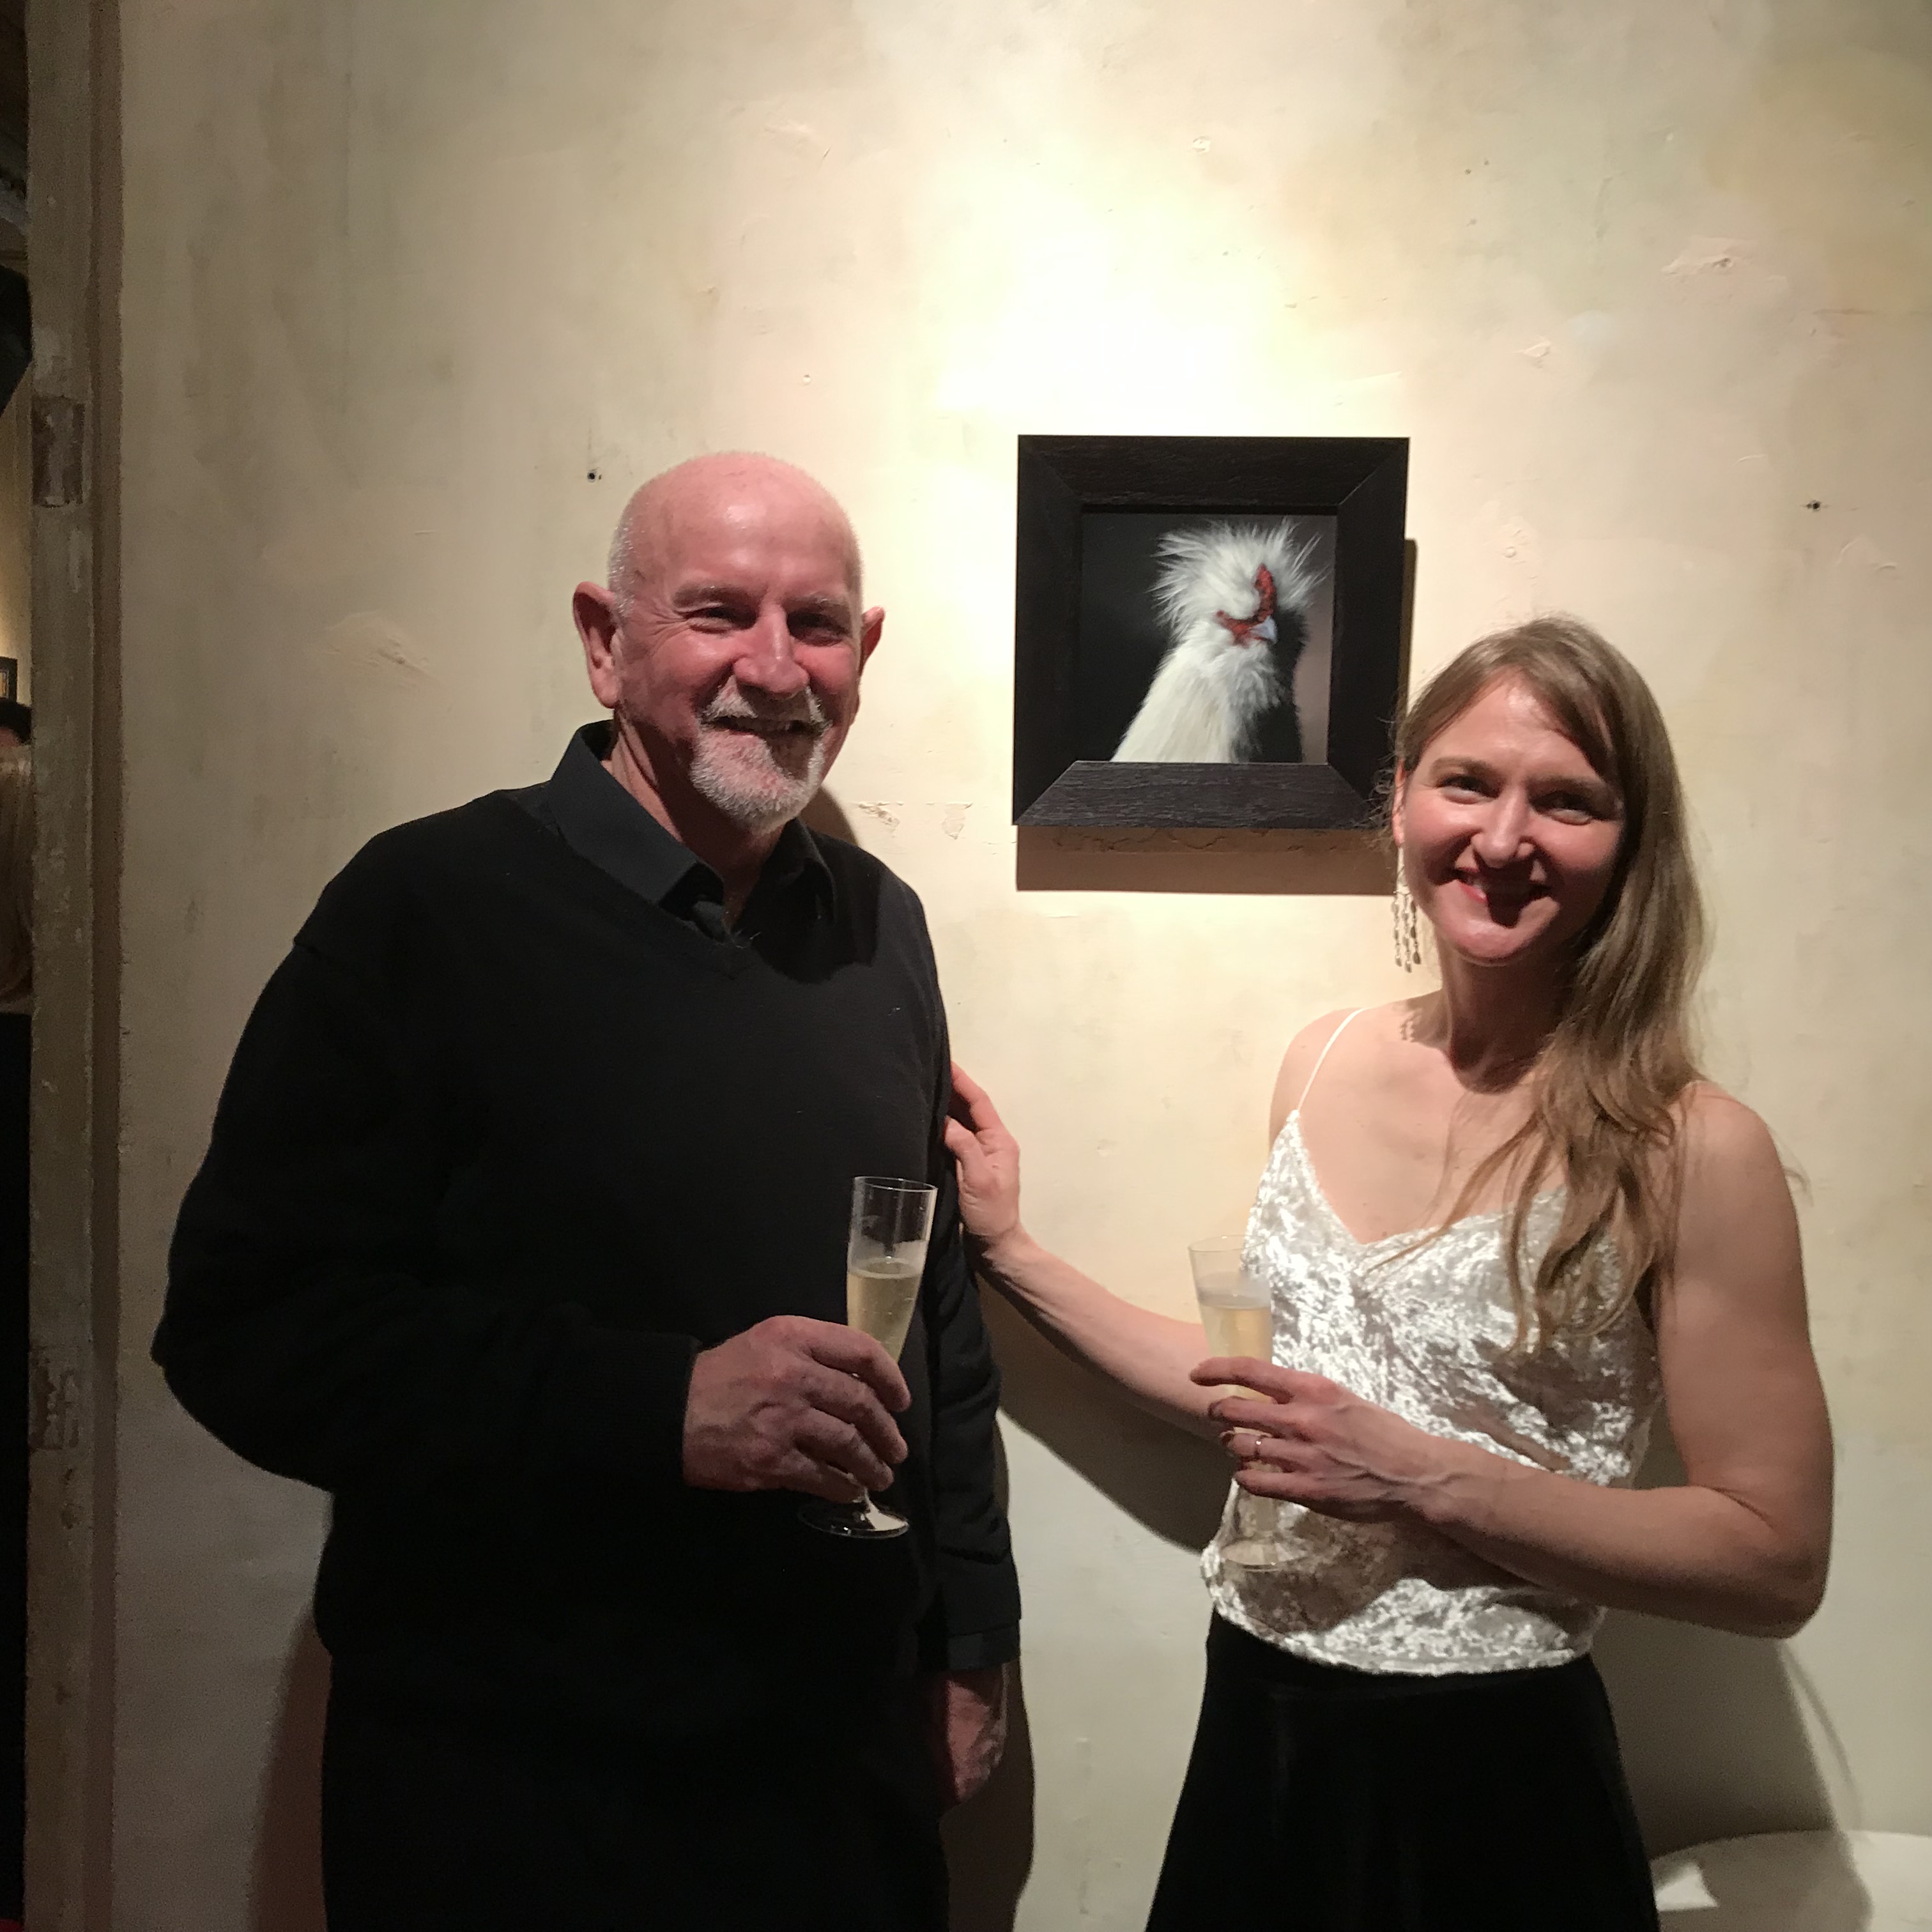 ARC Salon 2019 exhibition at the MEAM - Museu Europeu d'Art Modern. Artist Rebecca Luncan with Bill Howard